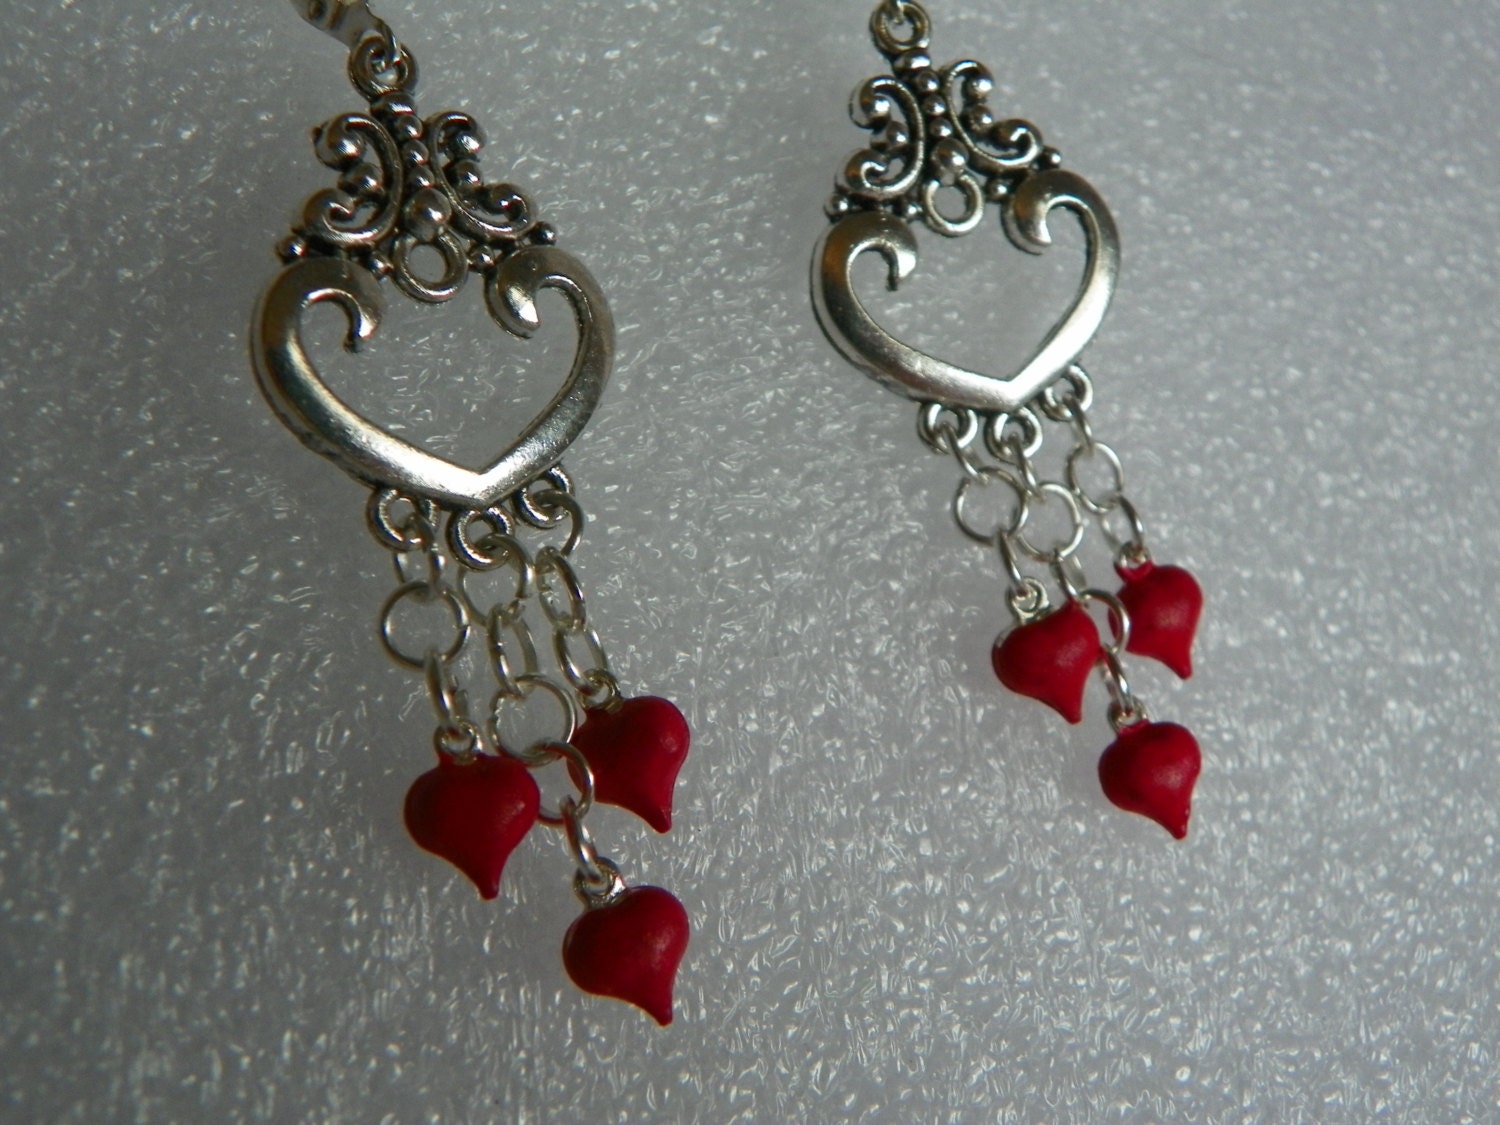 Heart Earrings heart earrings red earrings by CathysCreationsPlus